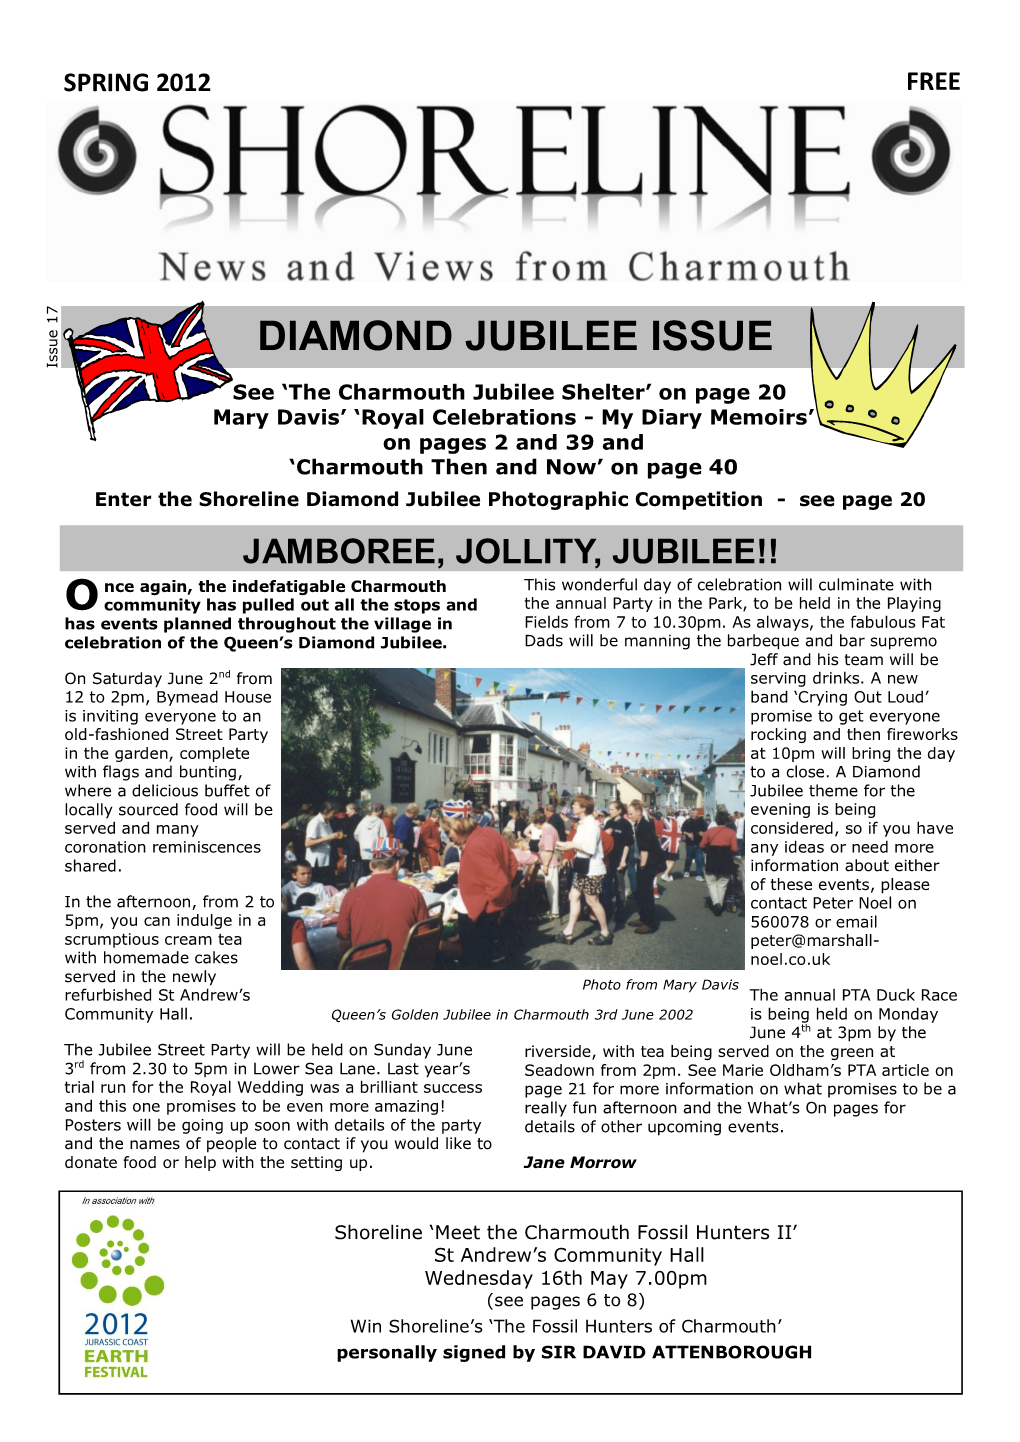 Diamond Jubilee Issue